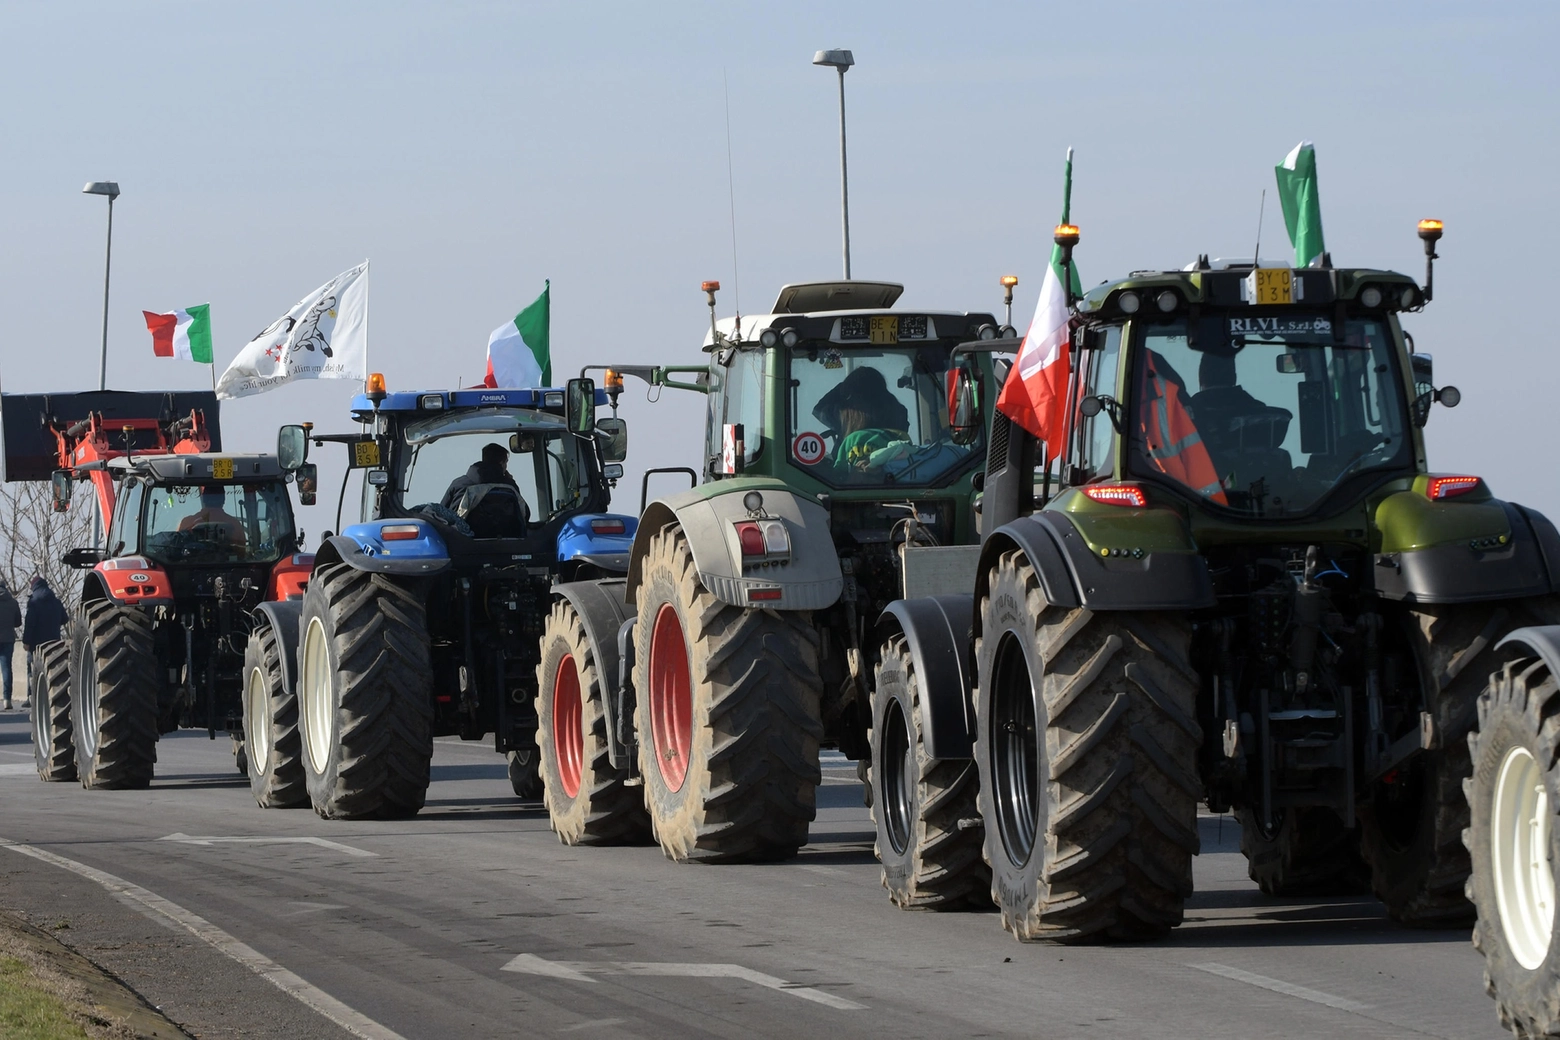 La protesta degli agricoltori contro le politiche europee (Ansa)